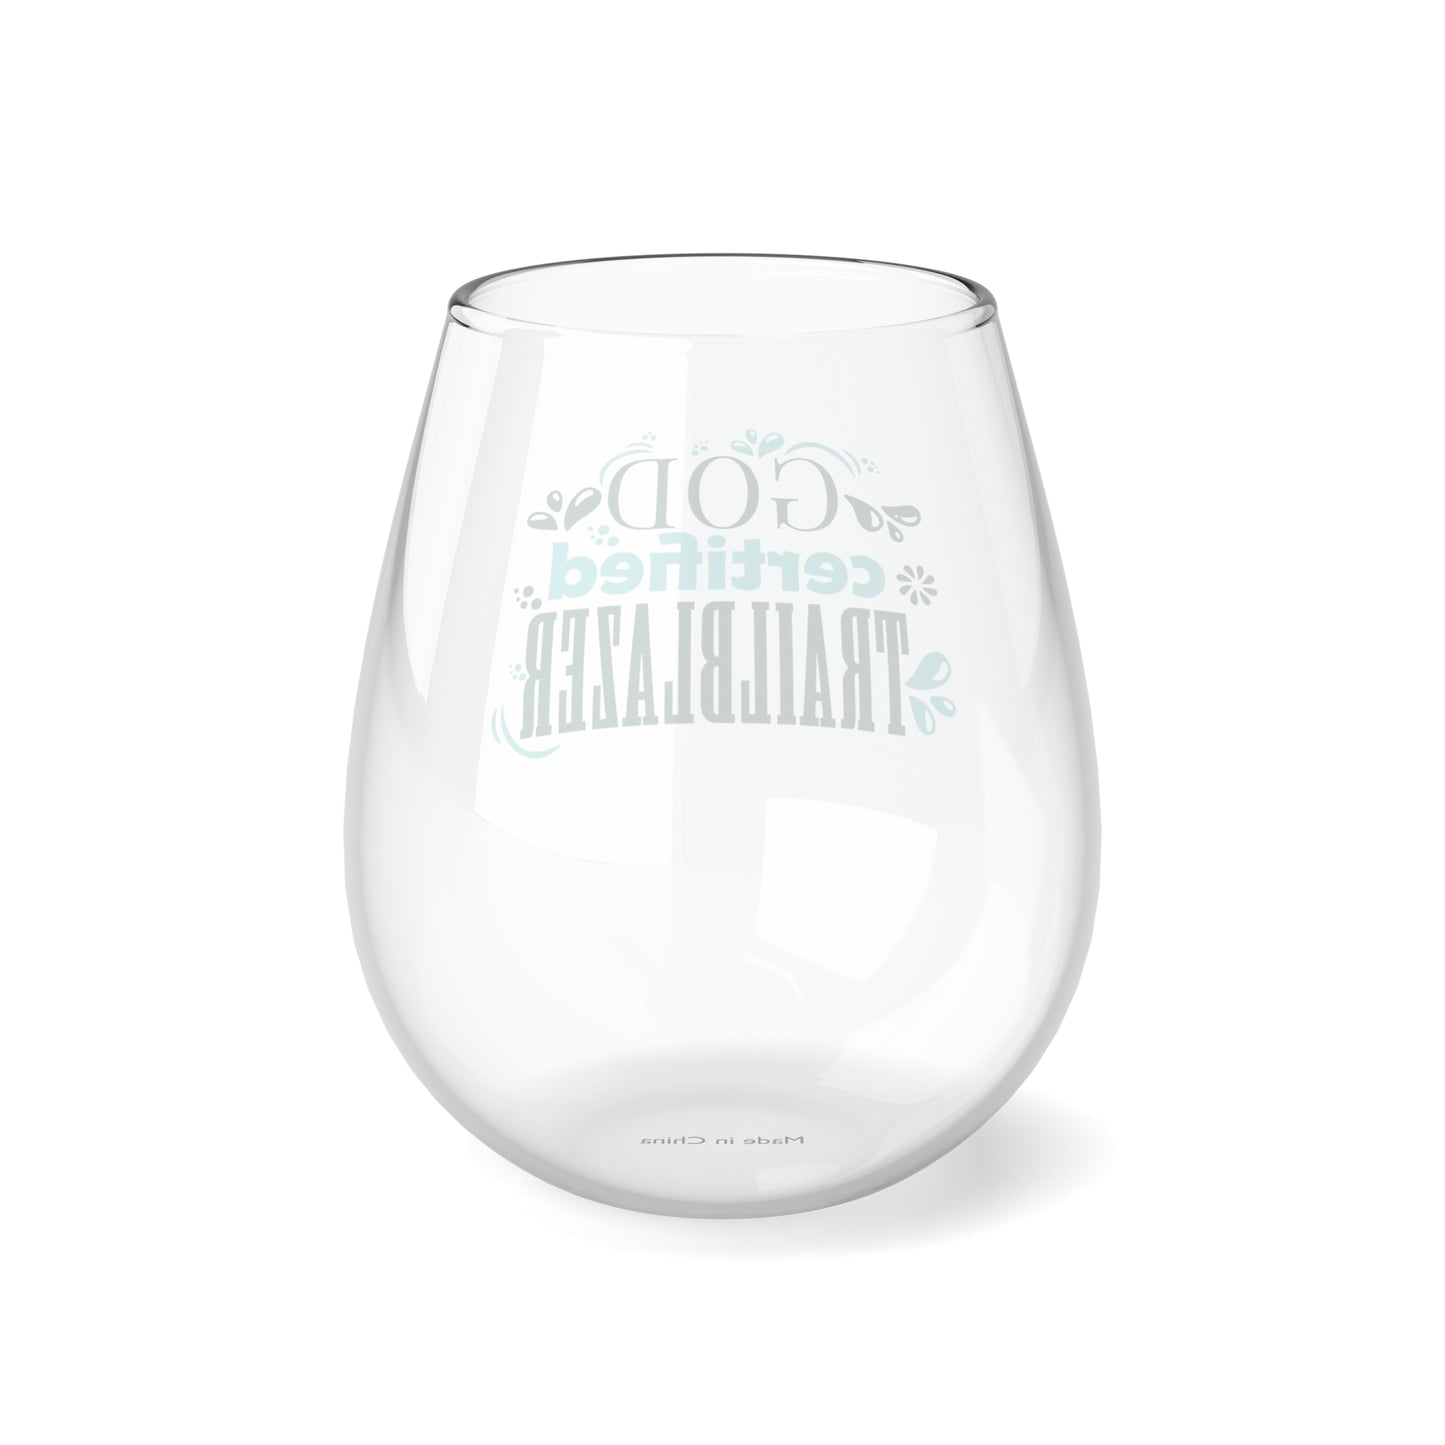 God Certified Trailblazer Stemless Wine Glass, 11.75oz